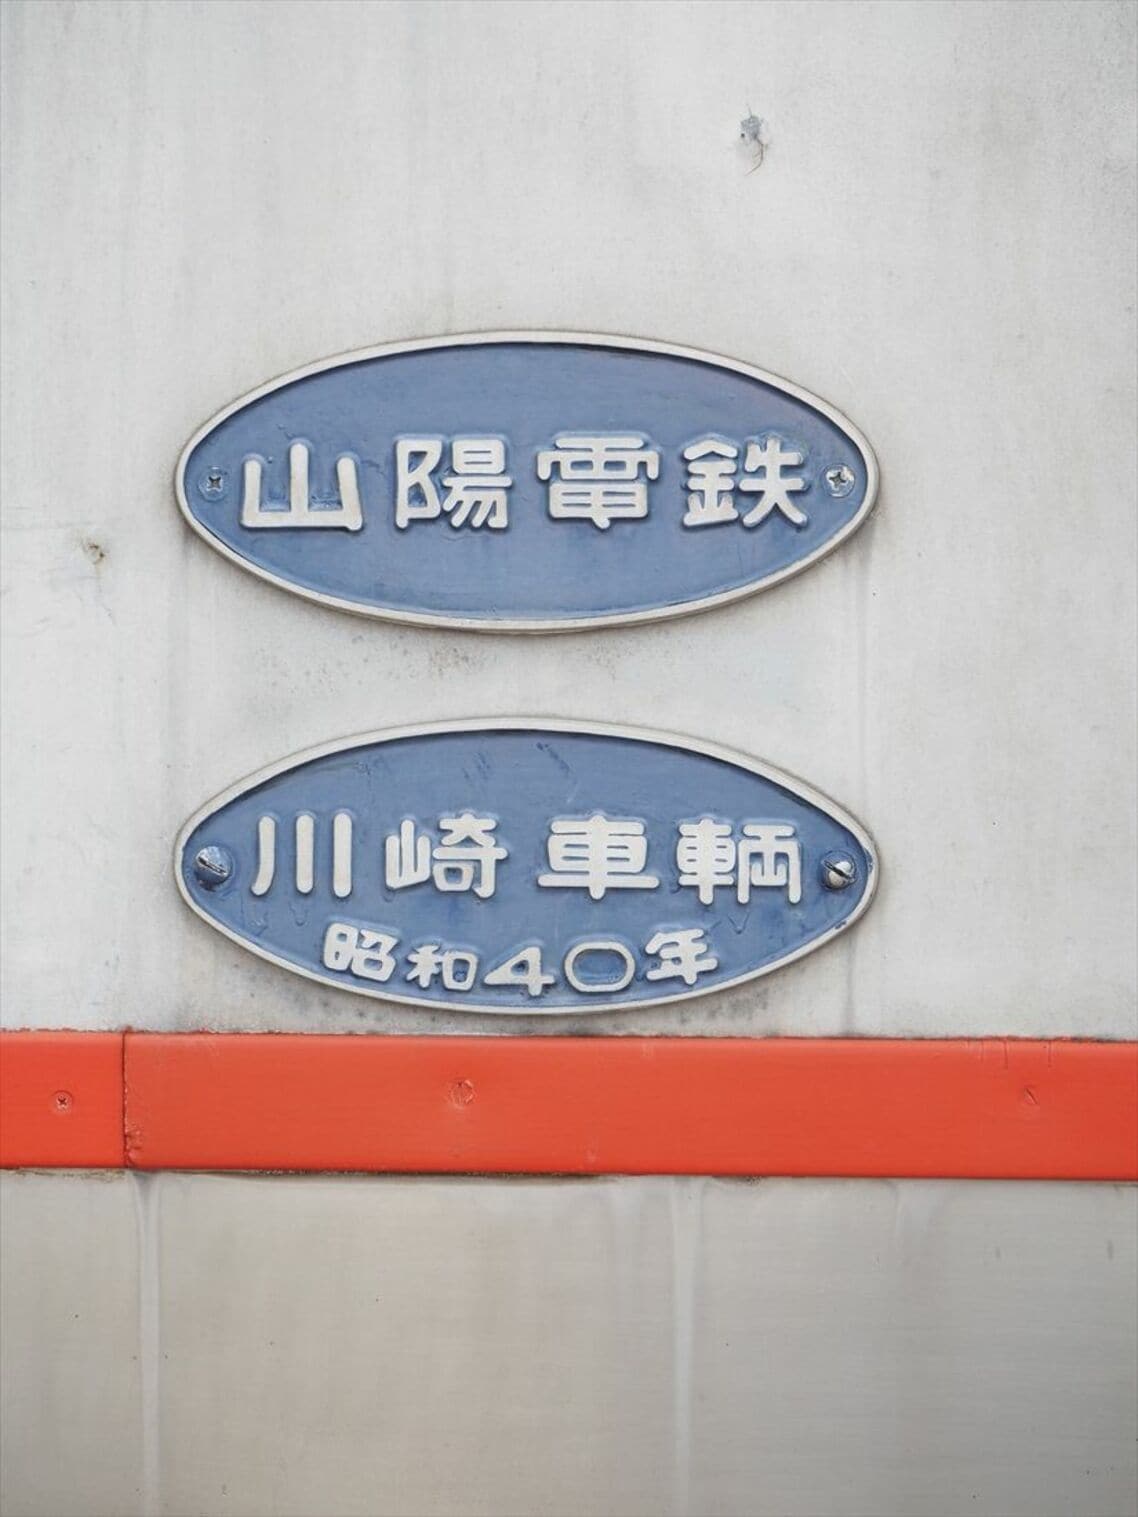 連結面にある「昭和40年川崎車輌」の銘板